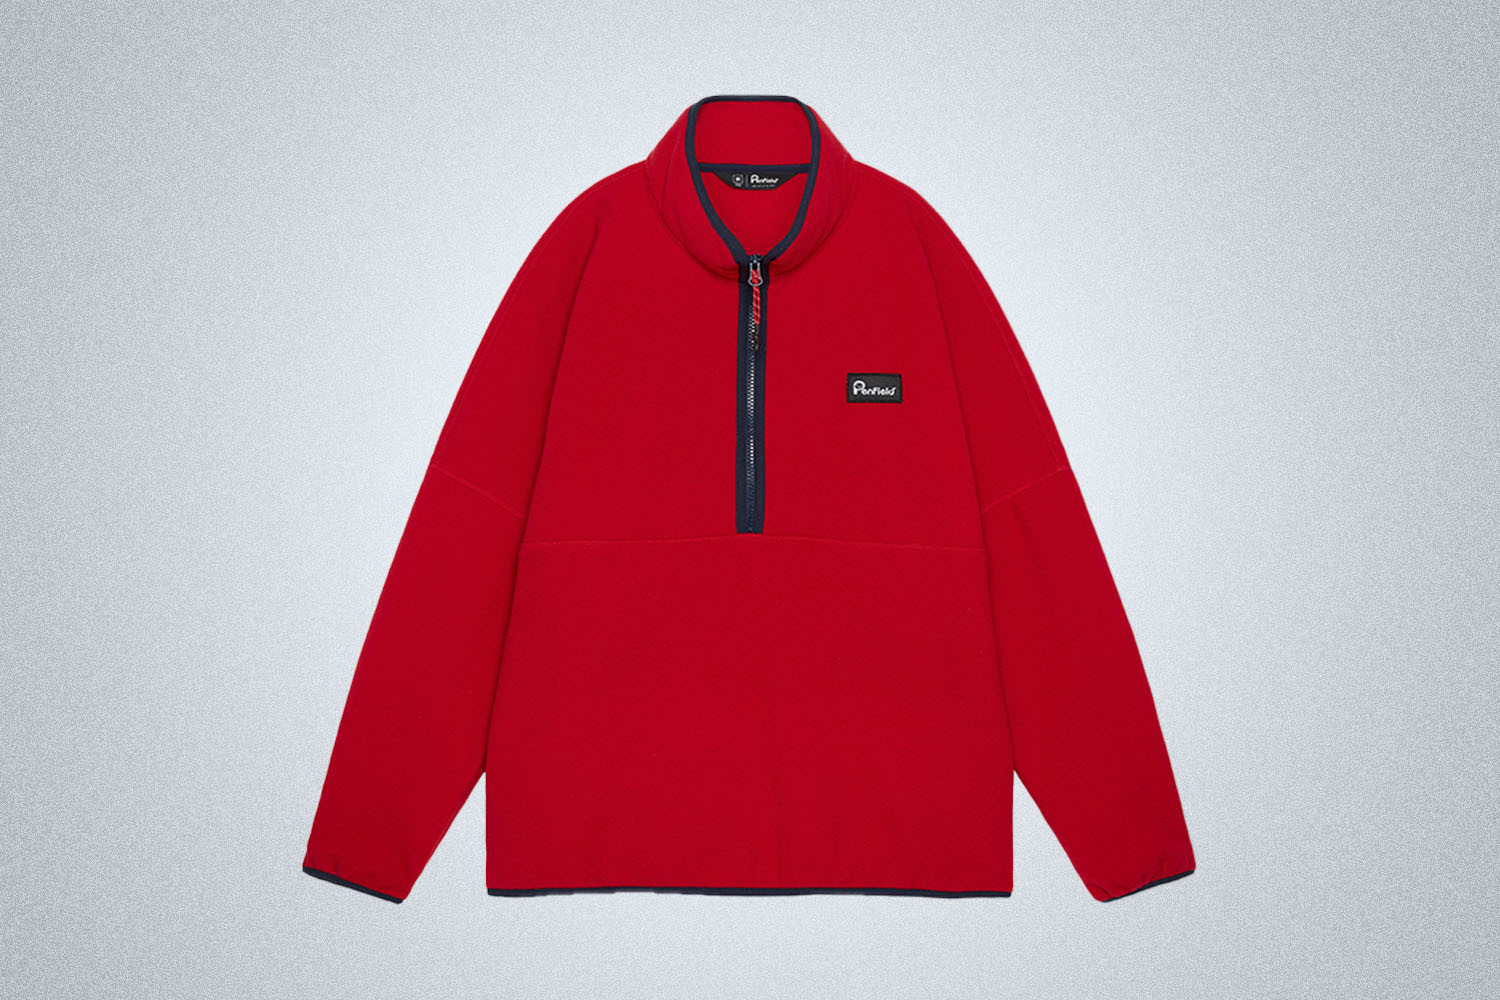 a red fleece jacket w/ black trim